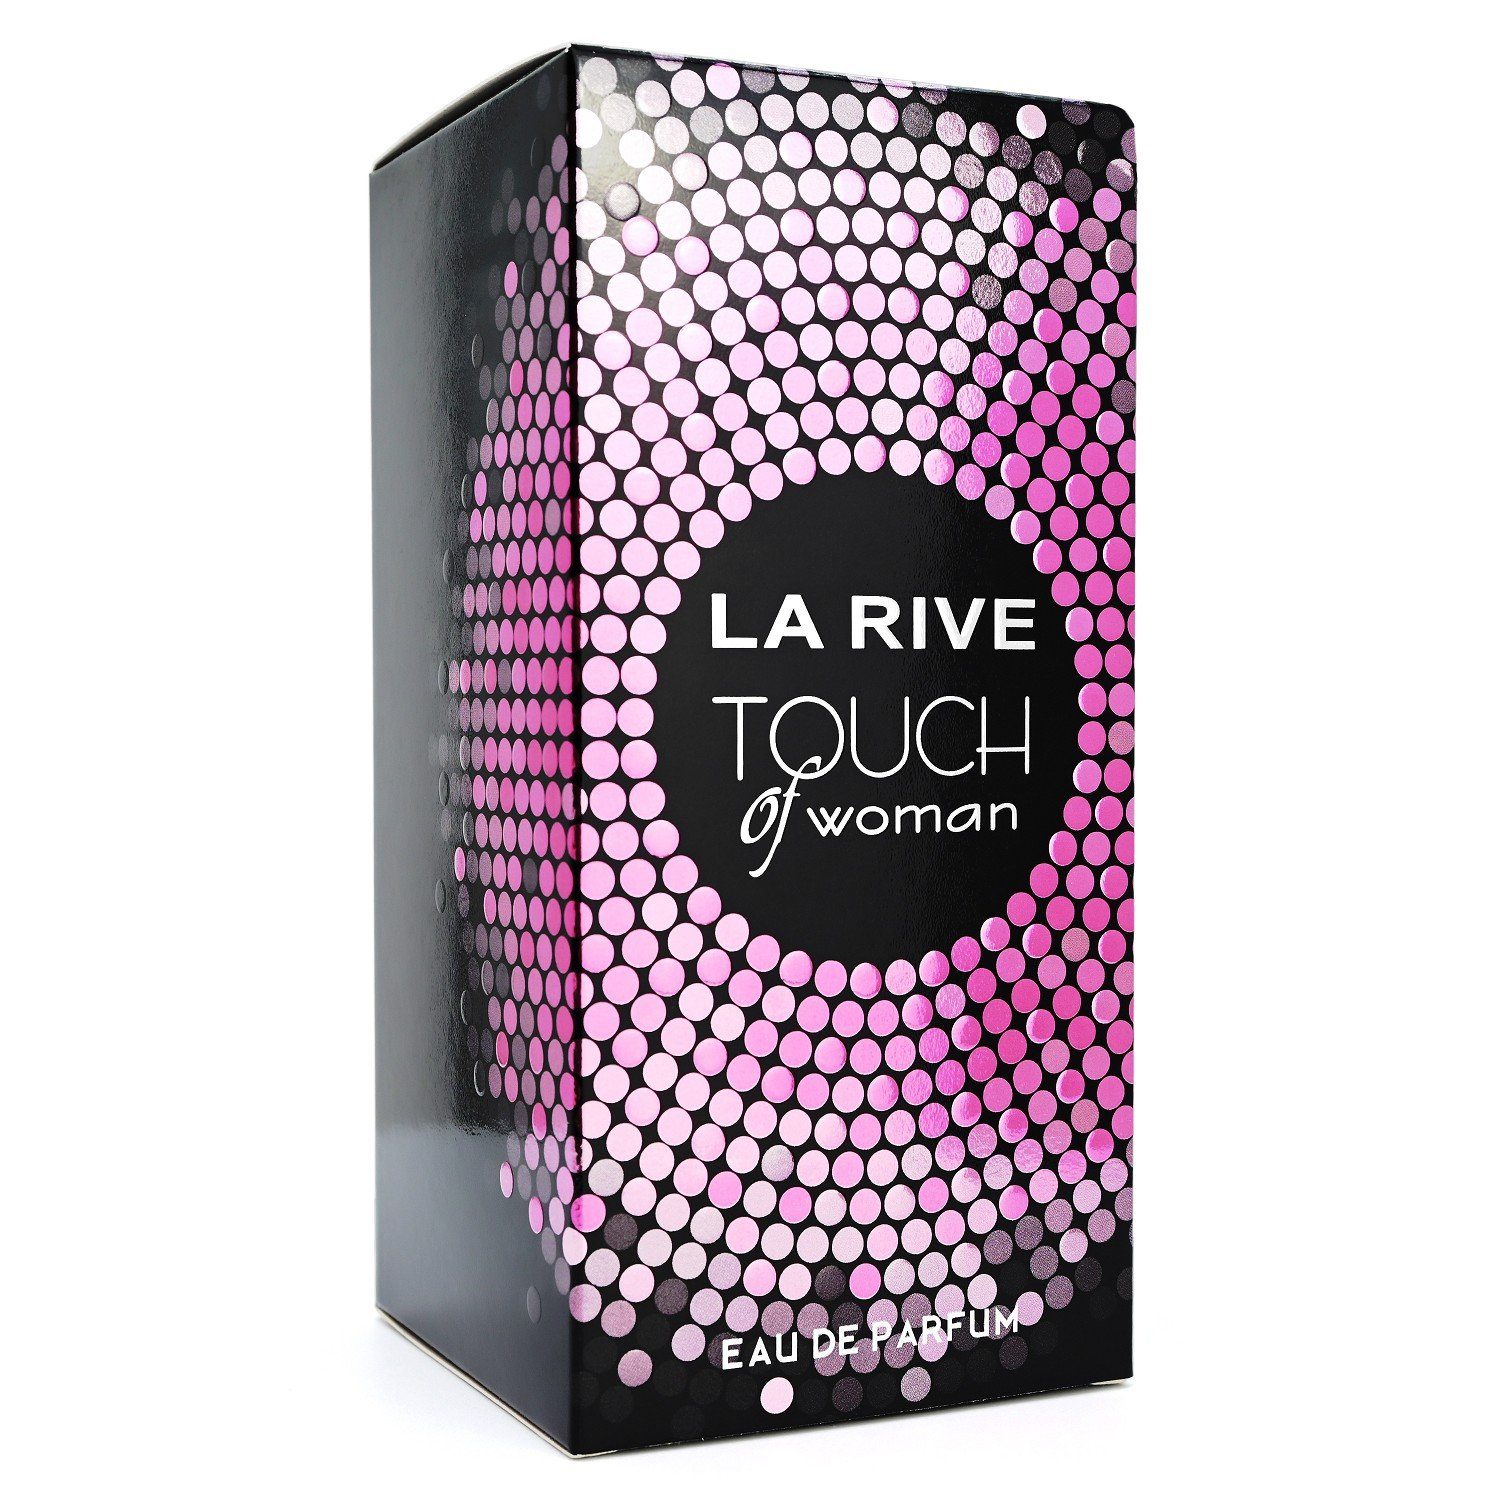 La Rive Eau de ml Parfum Touch Eau of LA - Parfum RIVE de - Woman 90